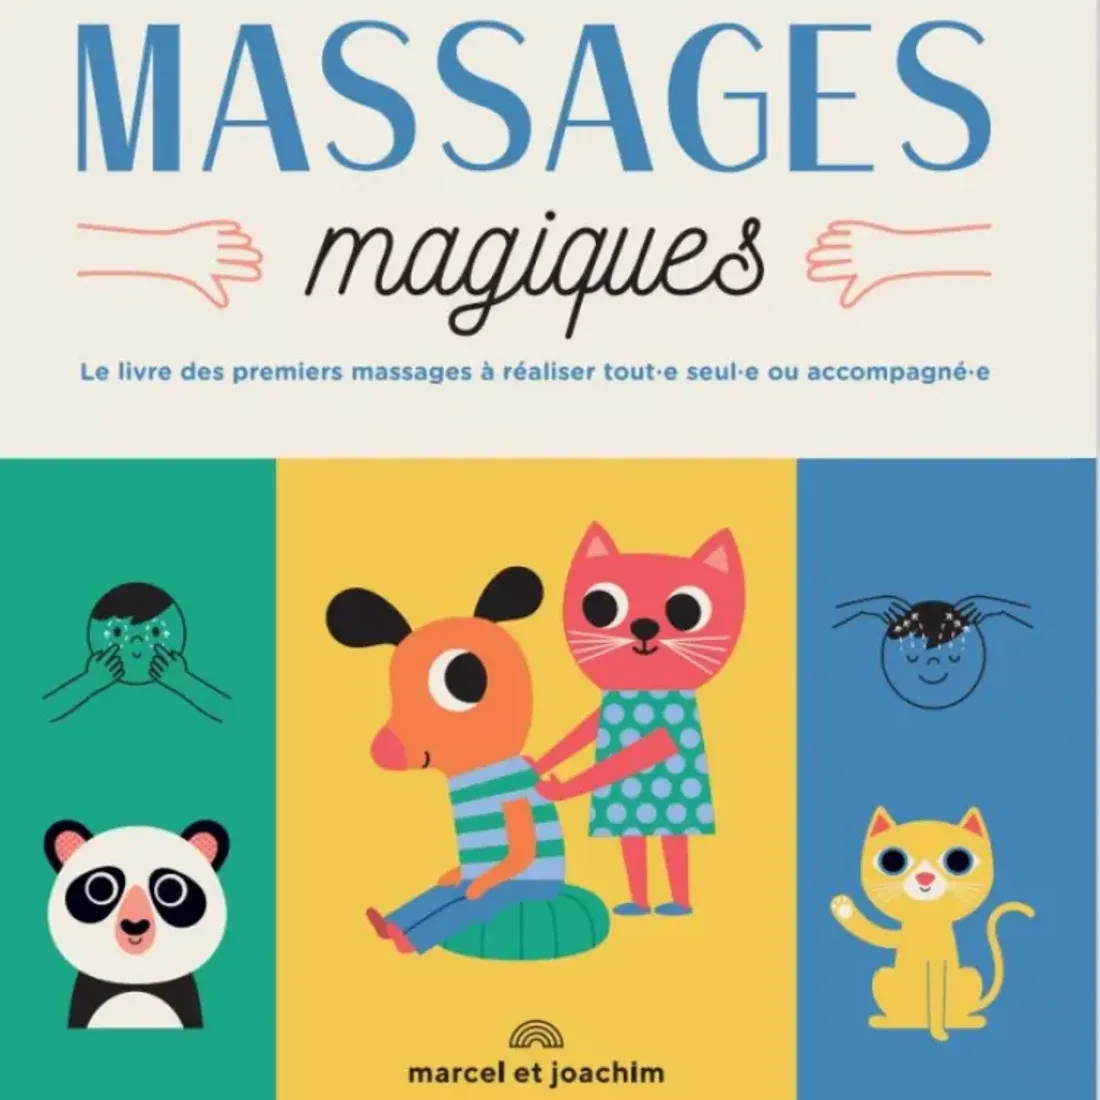 La couverture du livre "Les Massages Magiques".